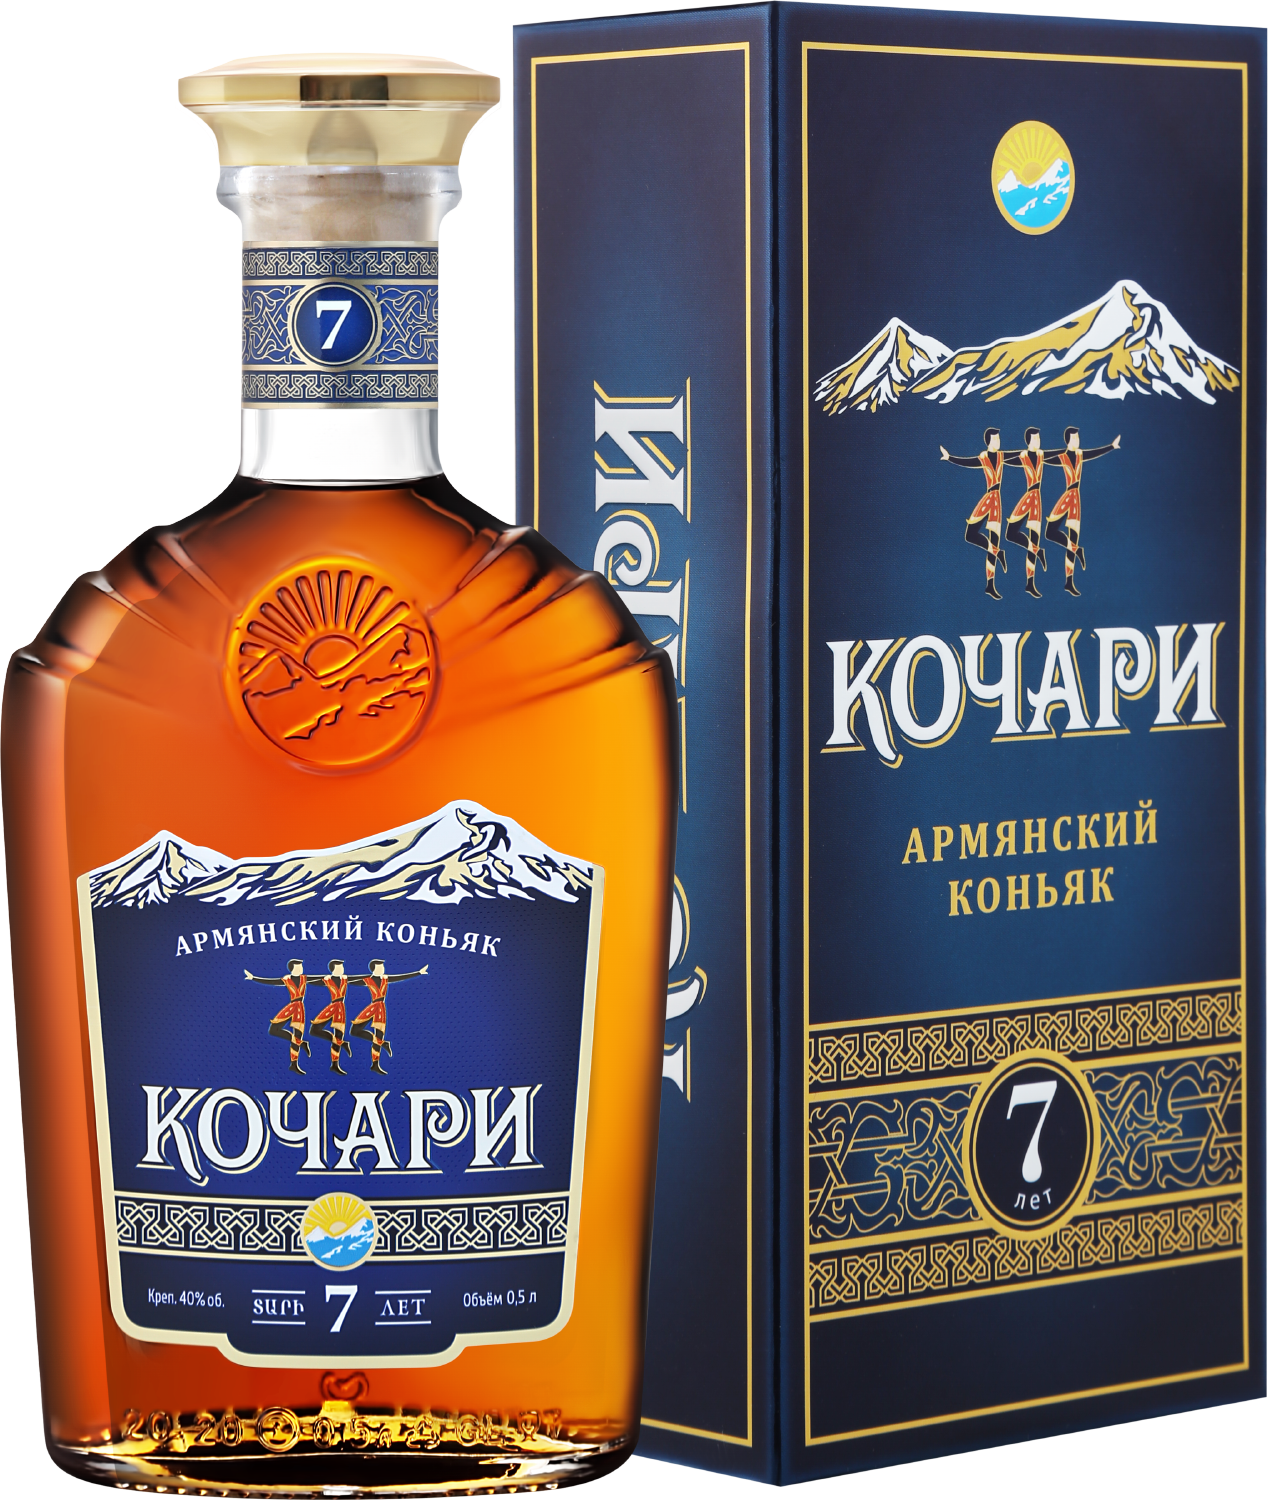 ararat otborny armenian brandy 7 y o gift box Kochari Armenian Brandy 7 Y.O. (gift box)